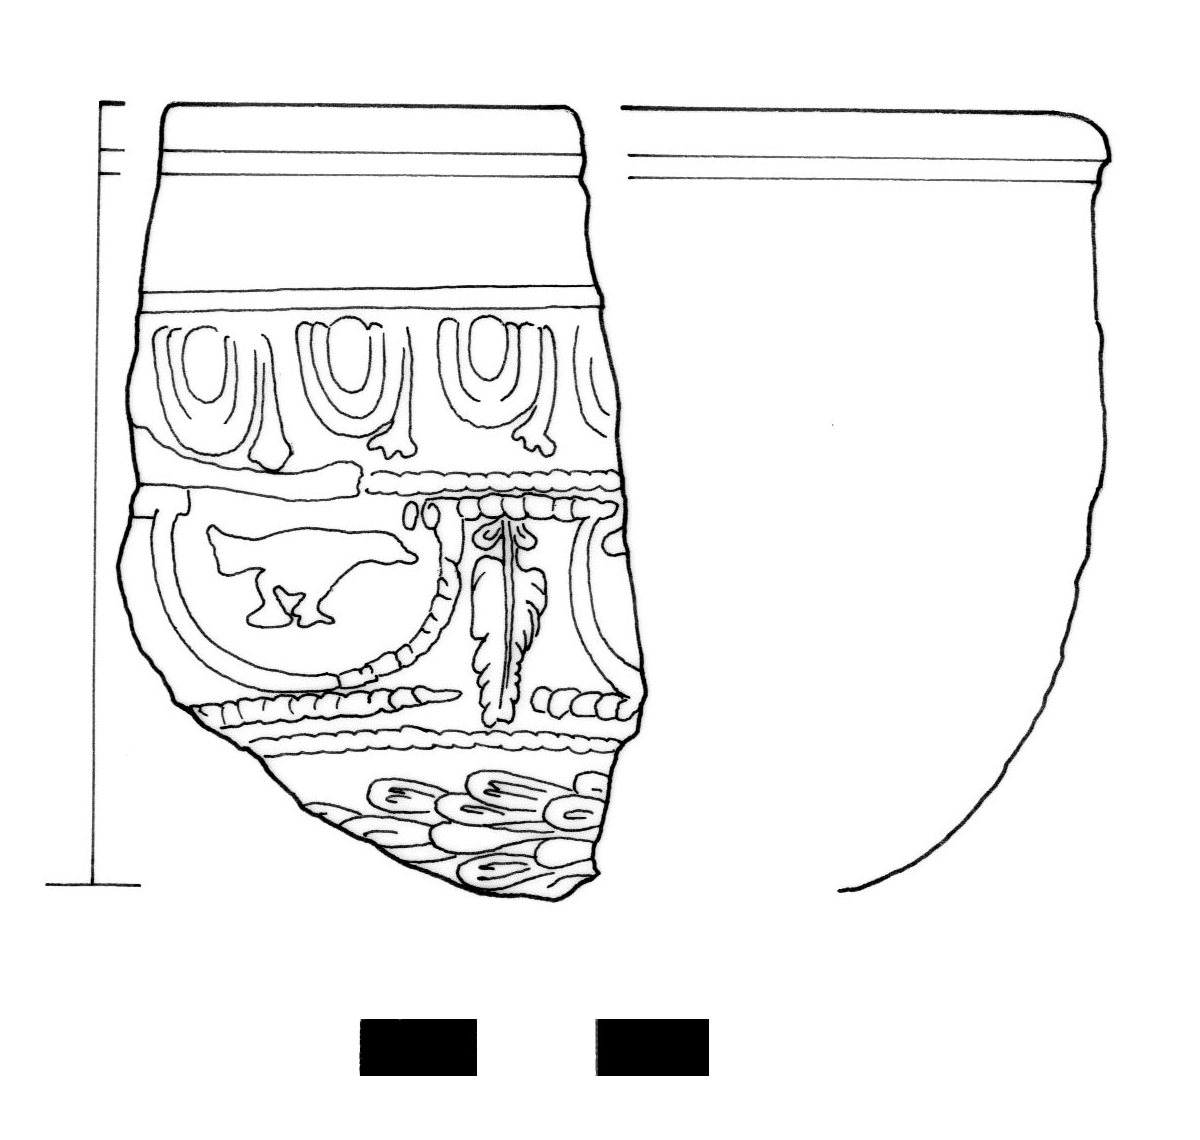 coppa/ emisferica, Dragendorff 37 - ambito gallo romano, La Graufesenque o Banassac (I-II)